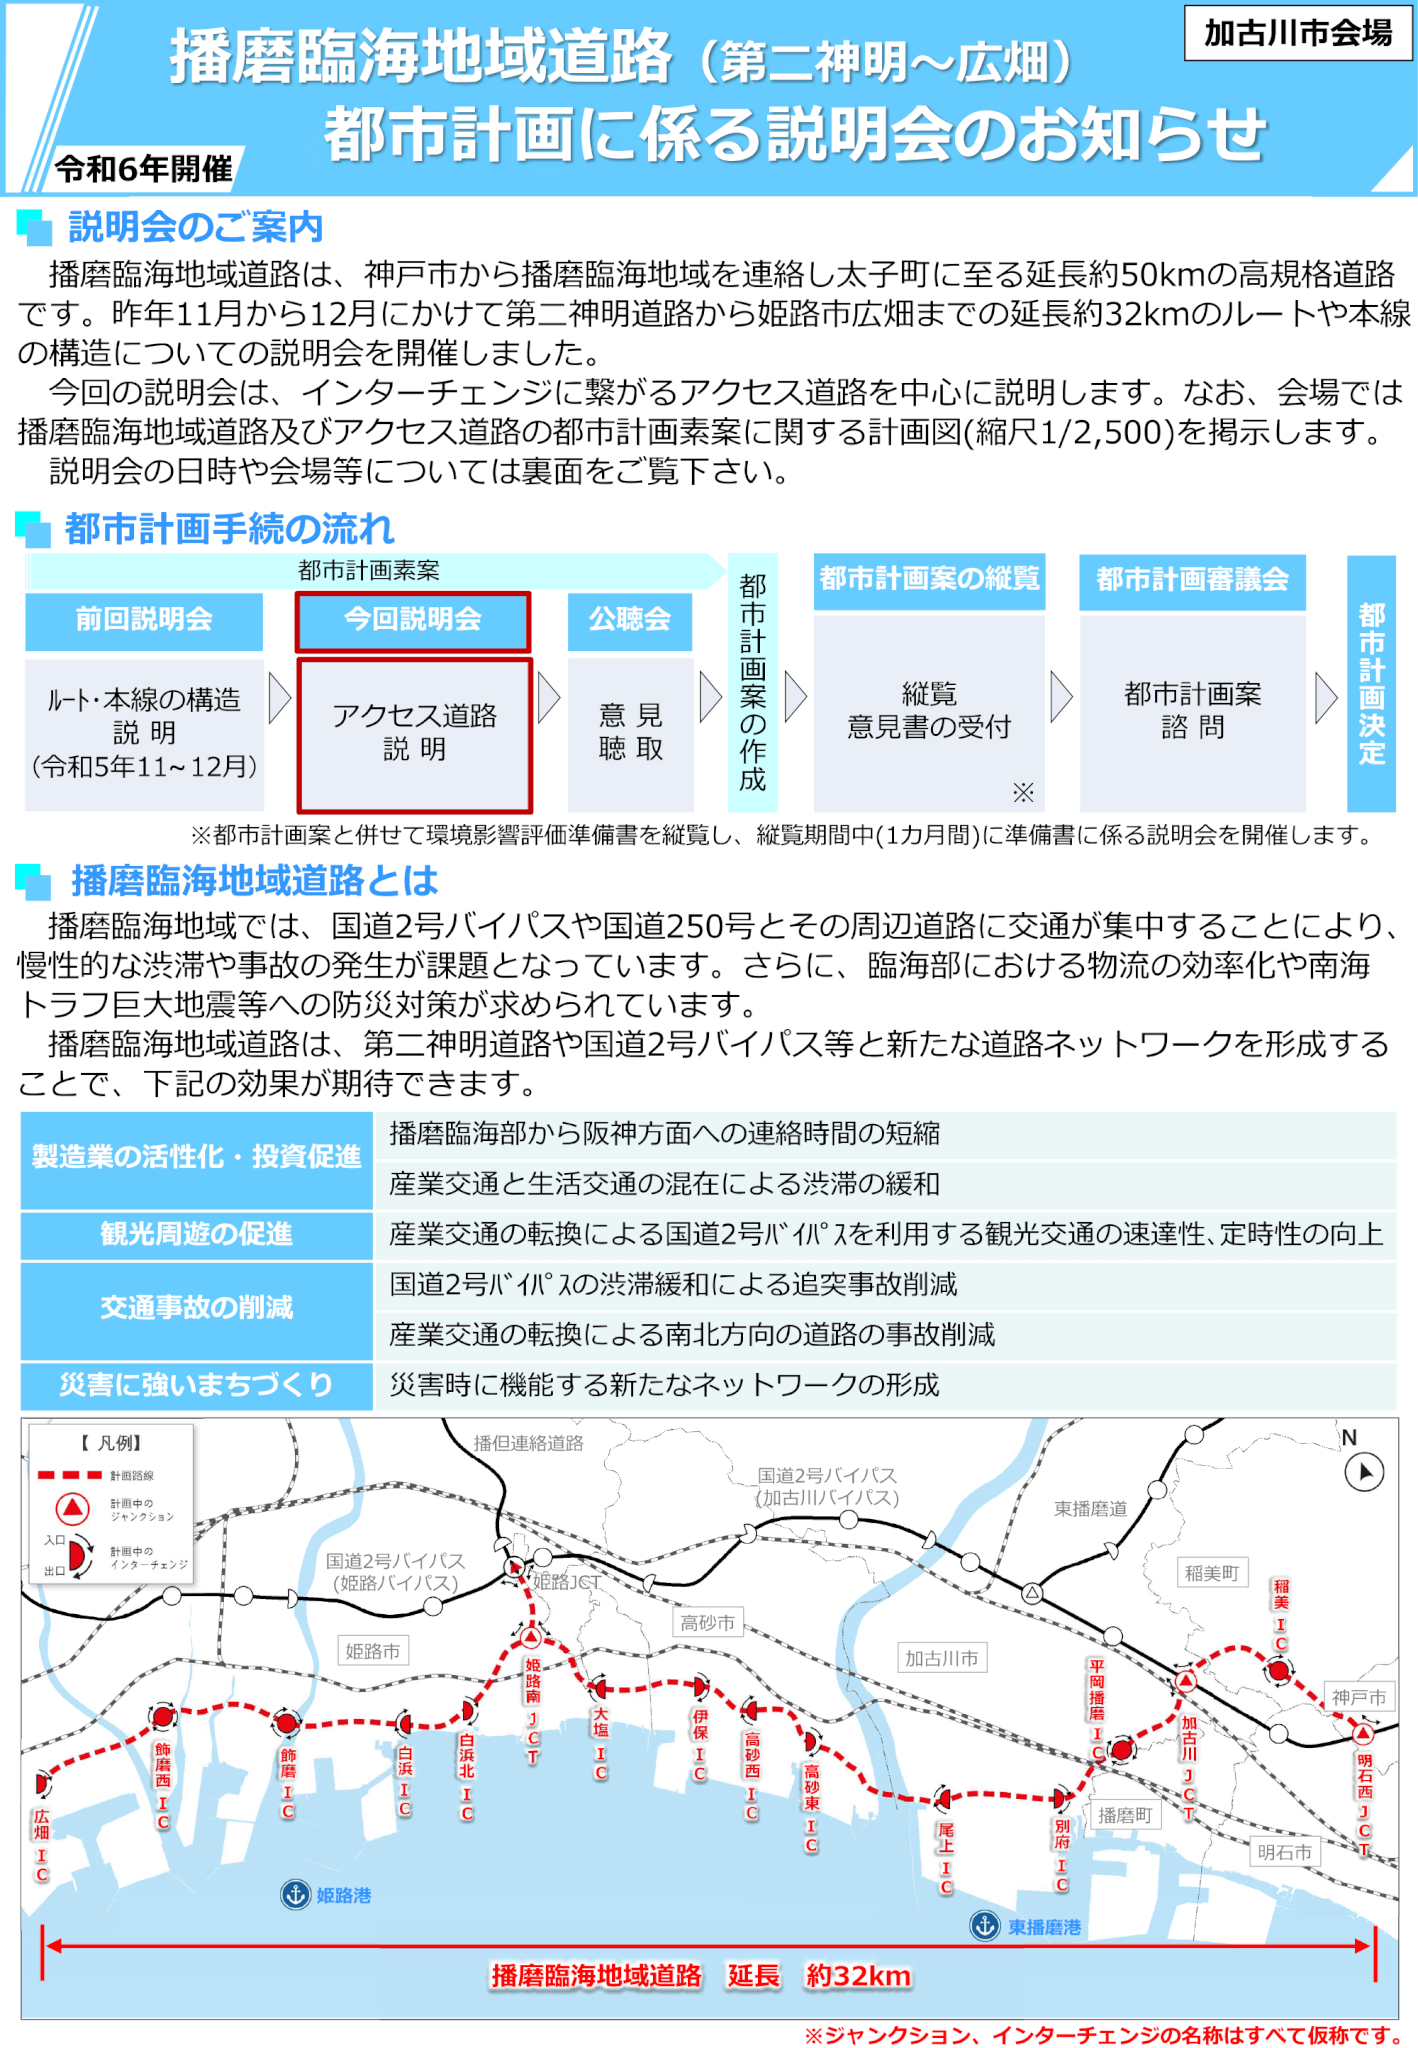 播磨臨海地域道路（第二神明～広畑）都市計画に係る説明のお知らせ。加古川市会場